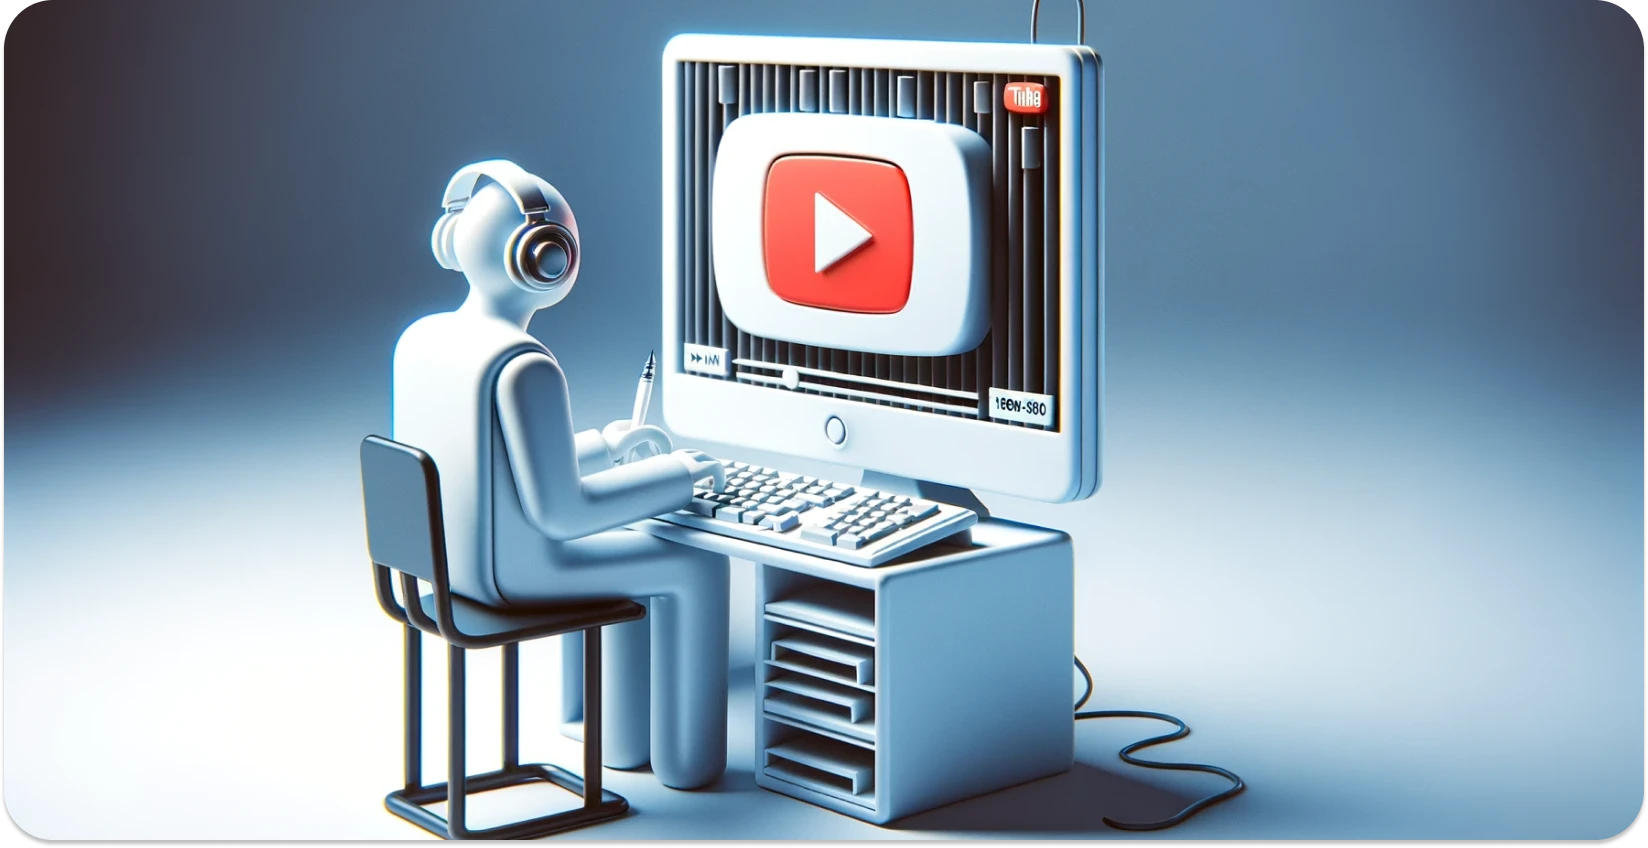 Stilizirana ilustracija osobe koja koristi računalo s YouTube sučeljem, usredotočujući se na transkripciju.